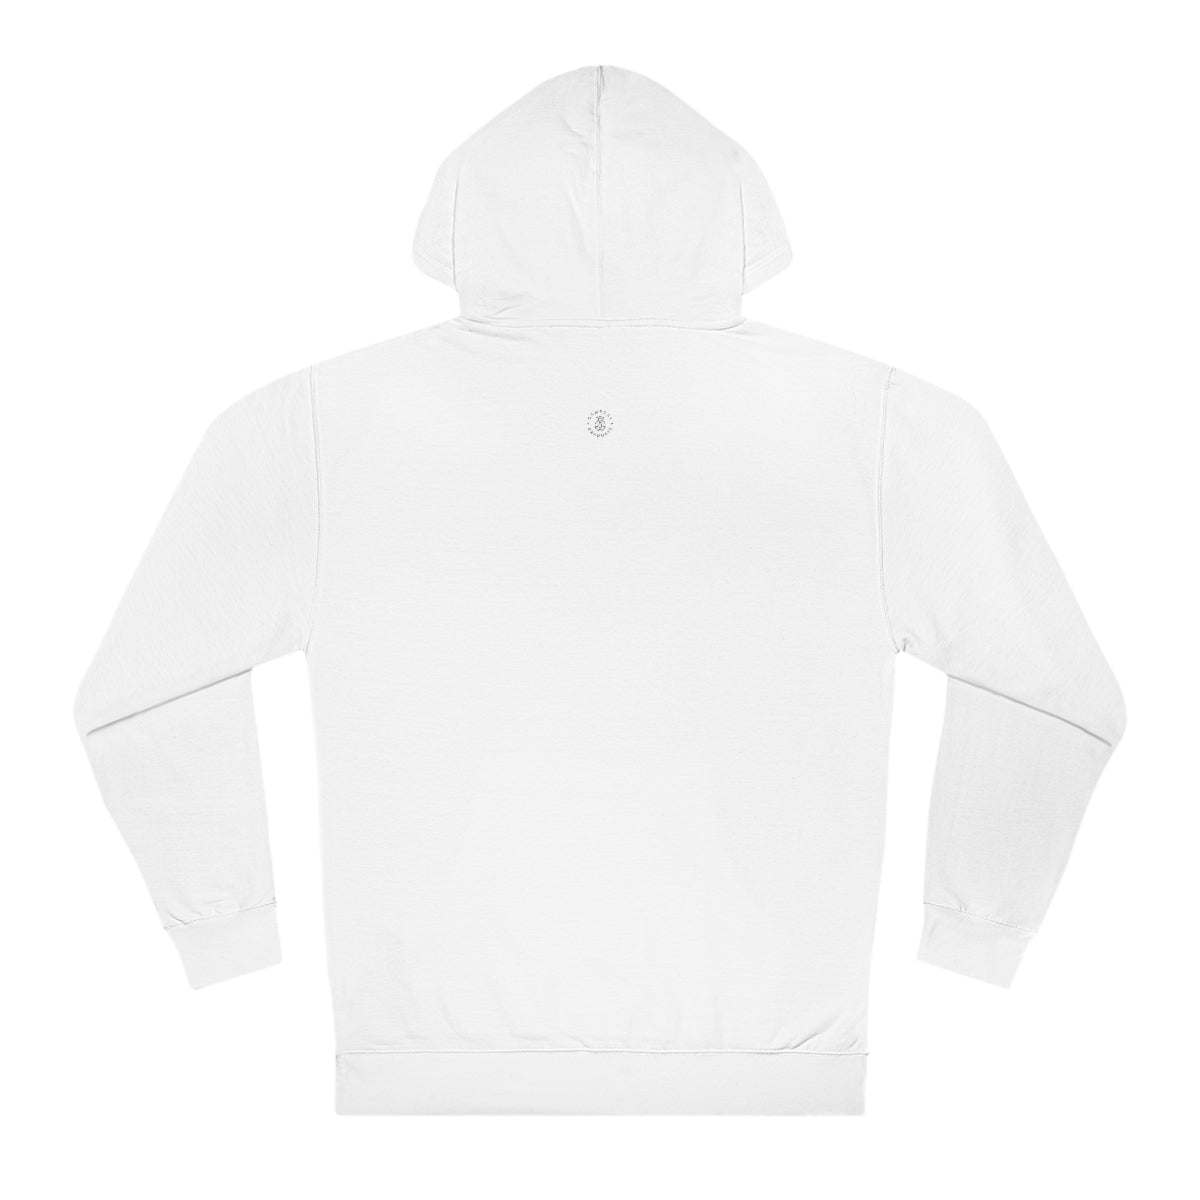 Smiley SLC Hooded Sweatshirt - GG - ITC